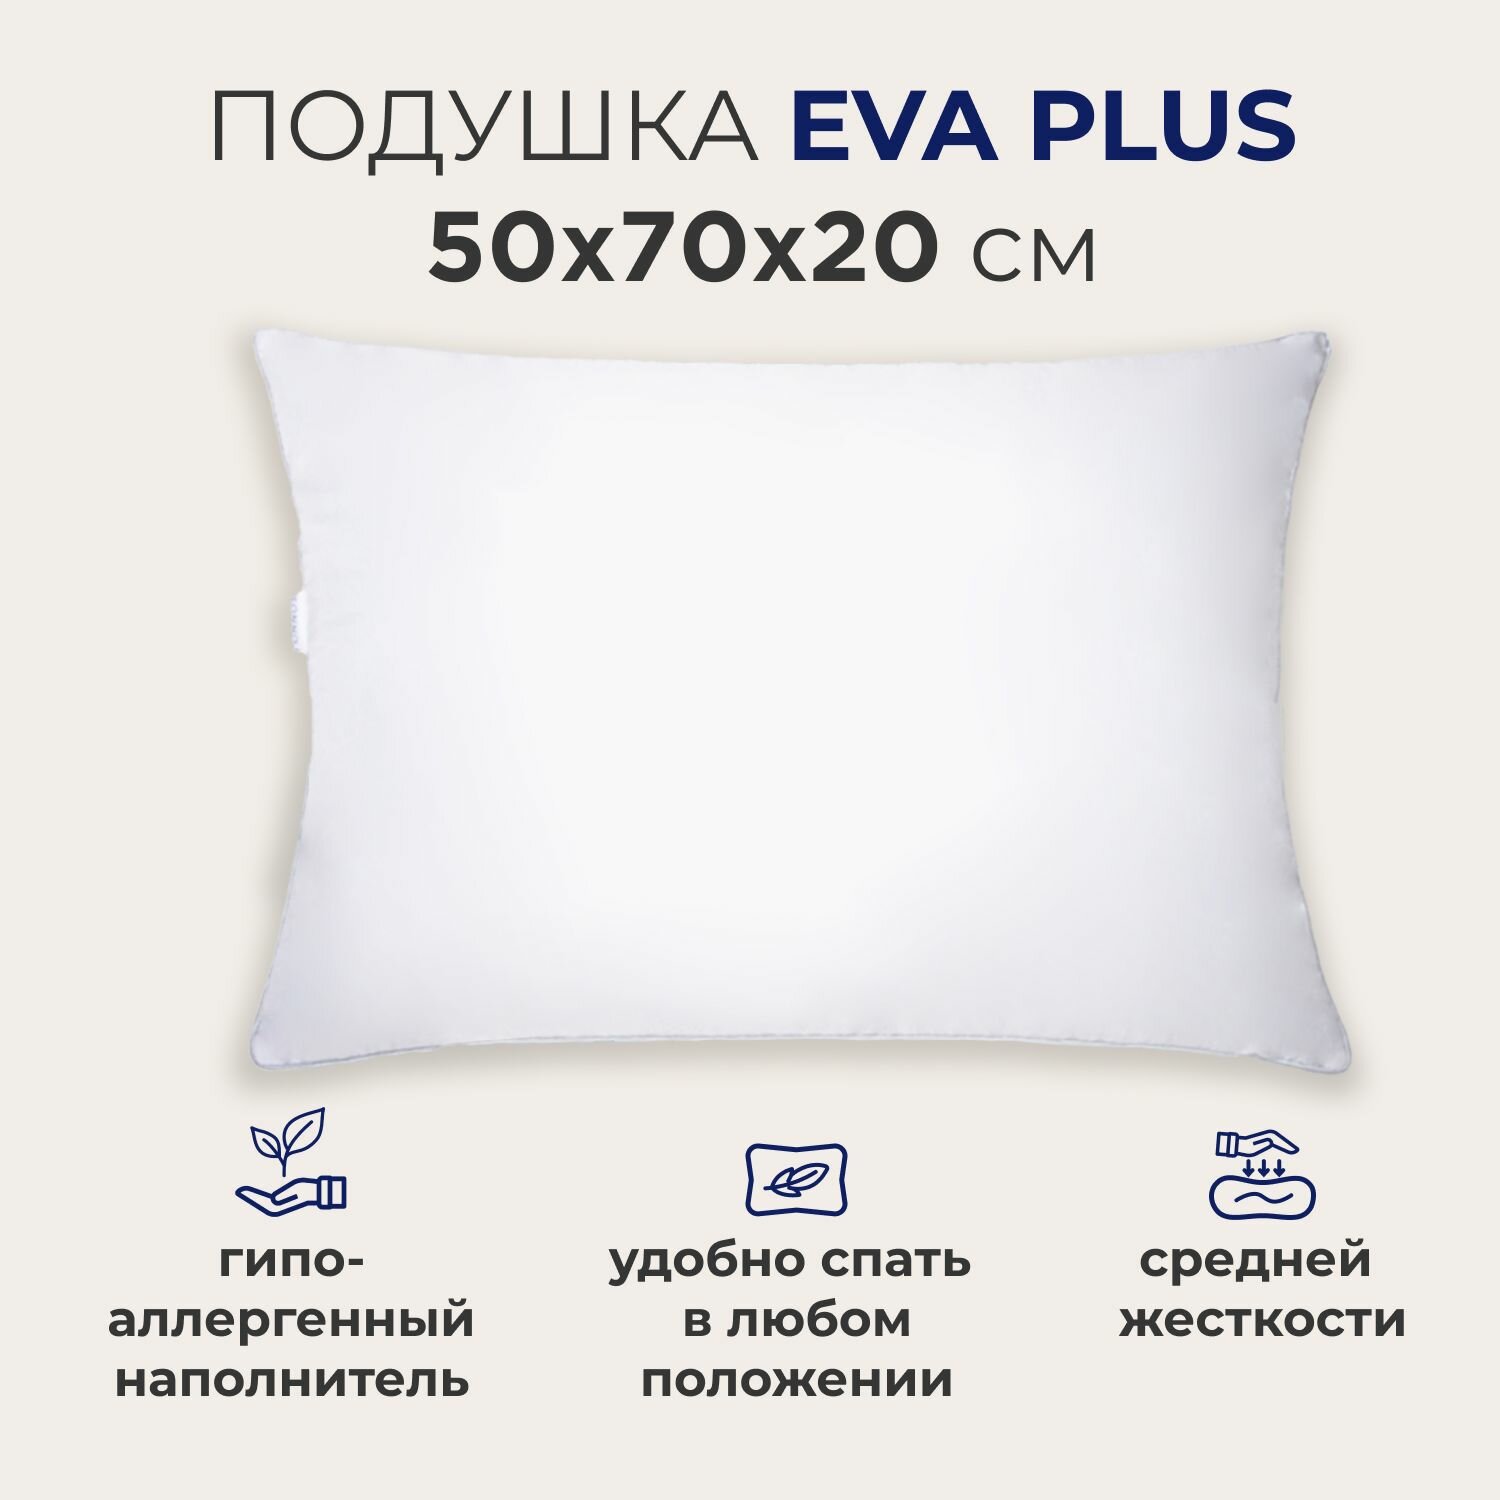 Подушка для сна SONNO EVA PLUS 50x70х20 см  средней жесткости гипоаллергенный наполнитель Amicor TM